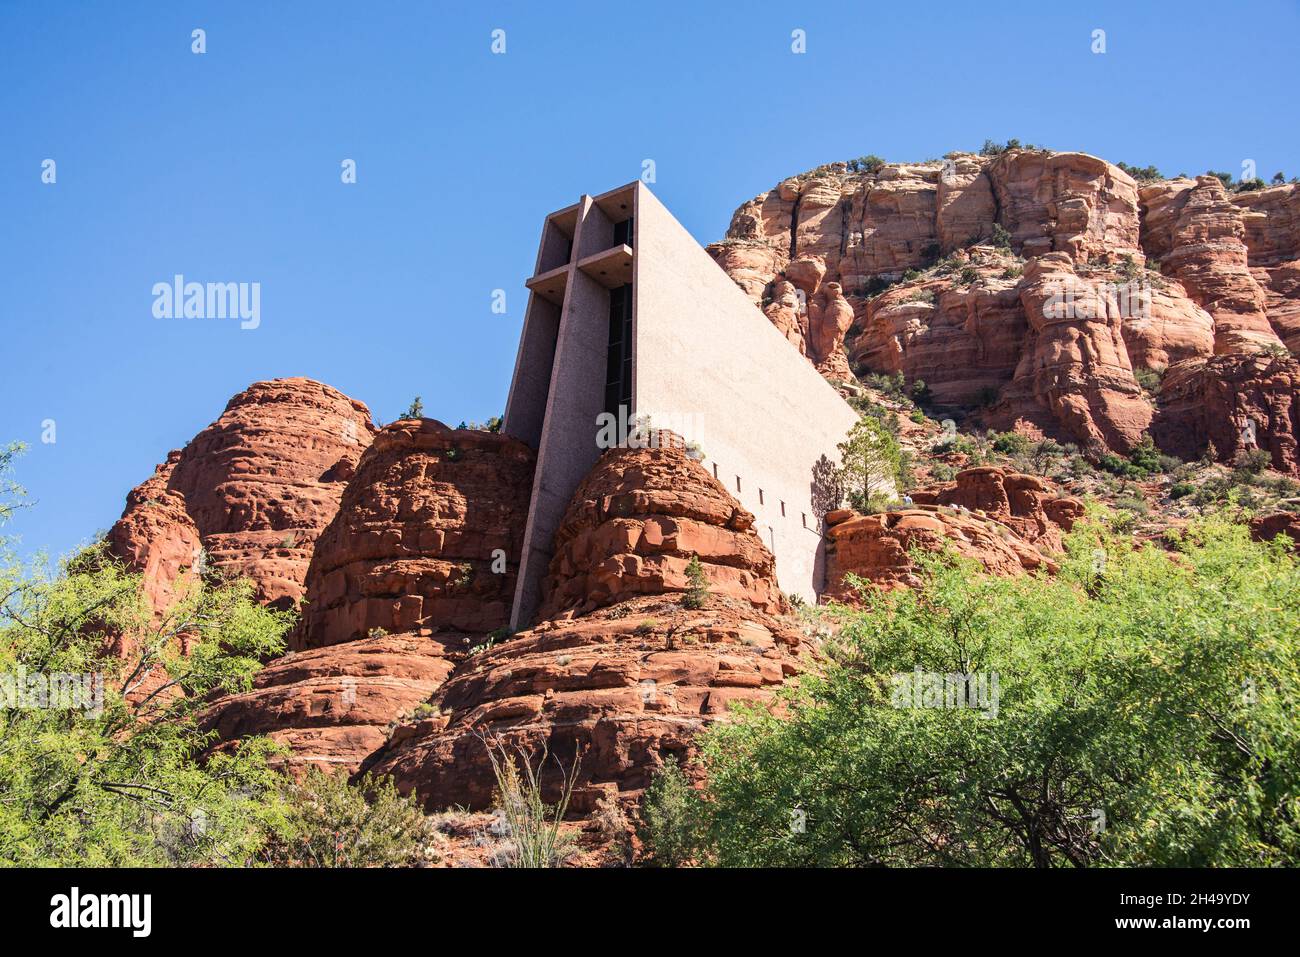 Chapel of the Holy Cross, Sedona, Arizona, U.S.A Stock Photo